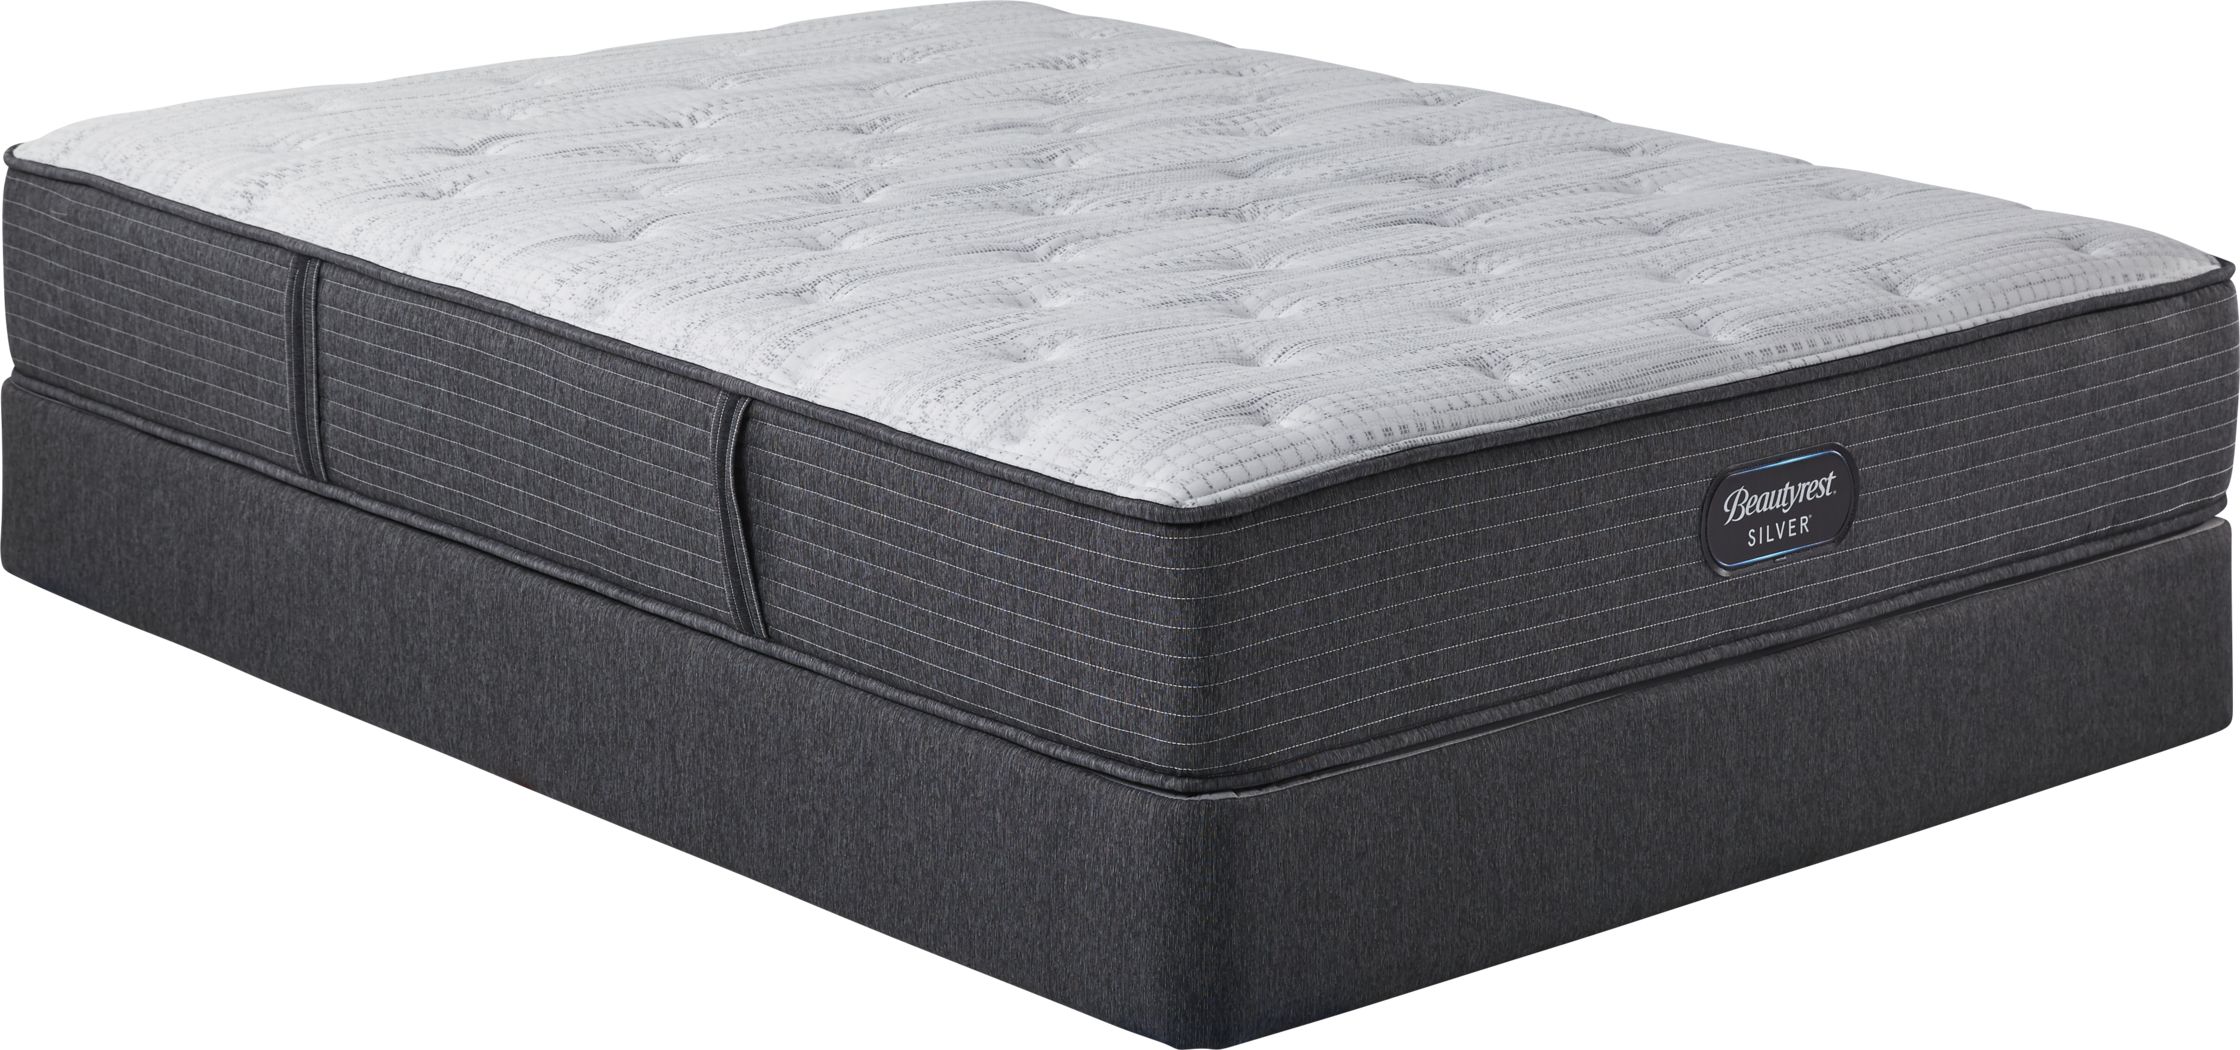 beautyrest silver king mattress price